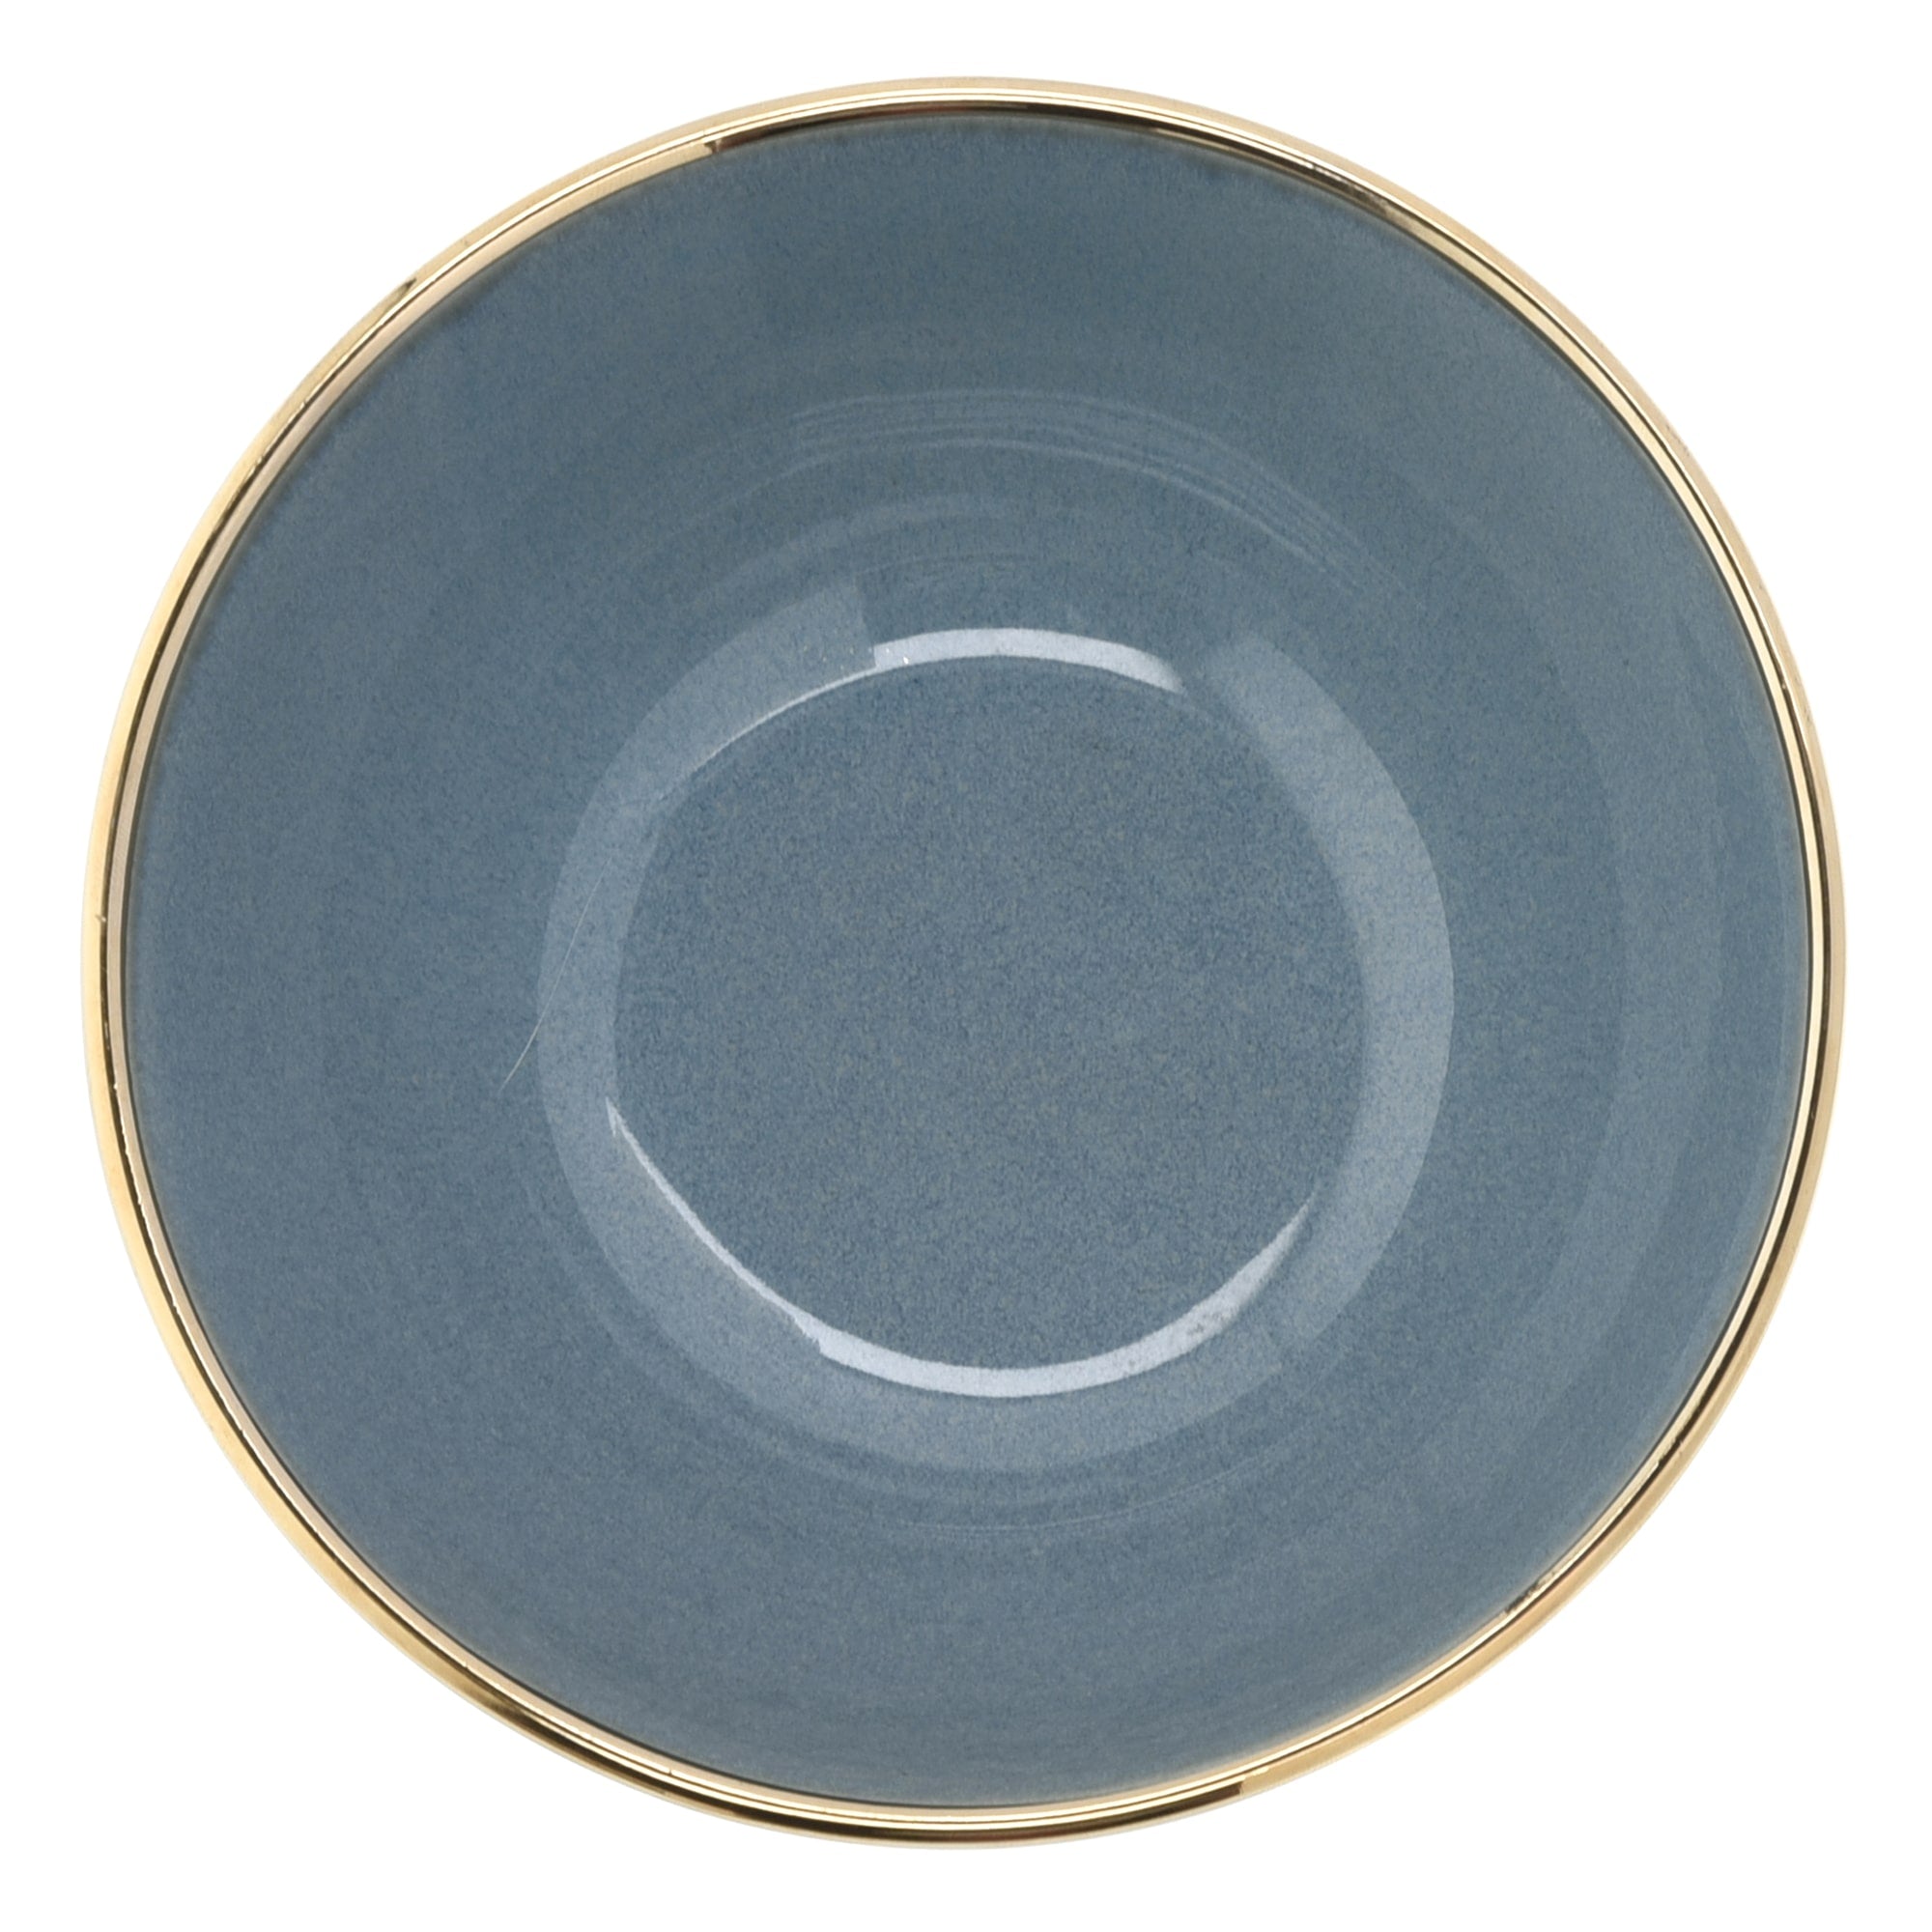 16-OZ Green Stoneware Bowl with Gold Rim - Set of Four